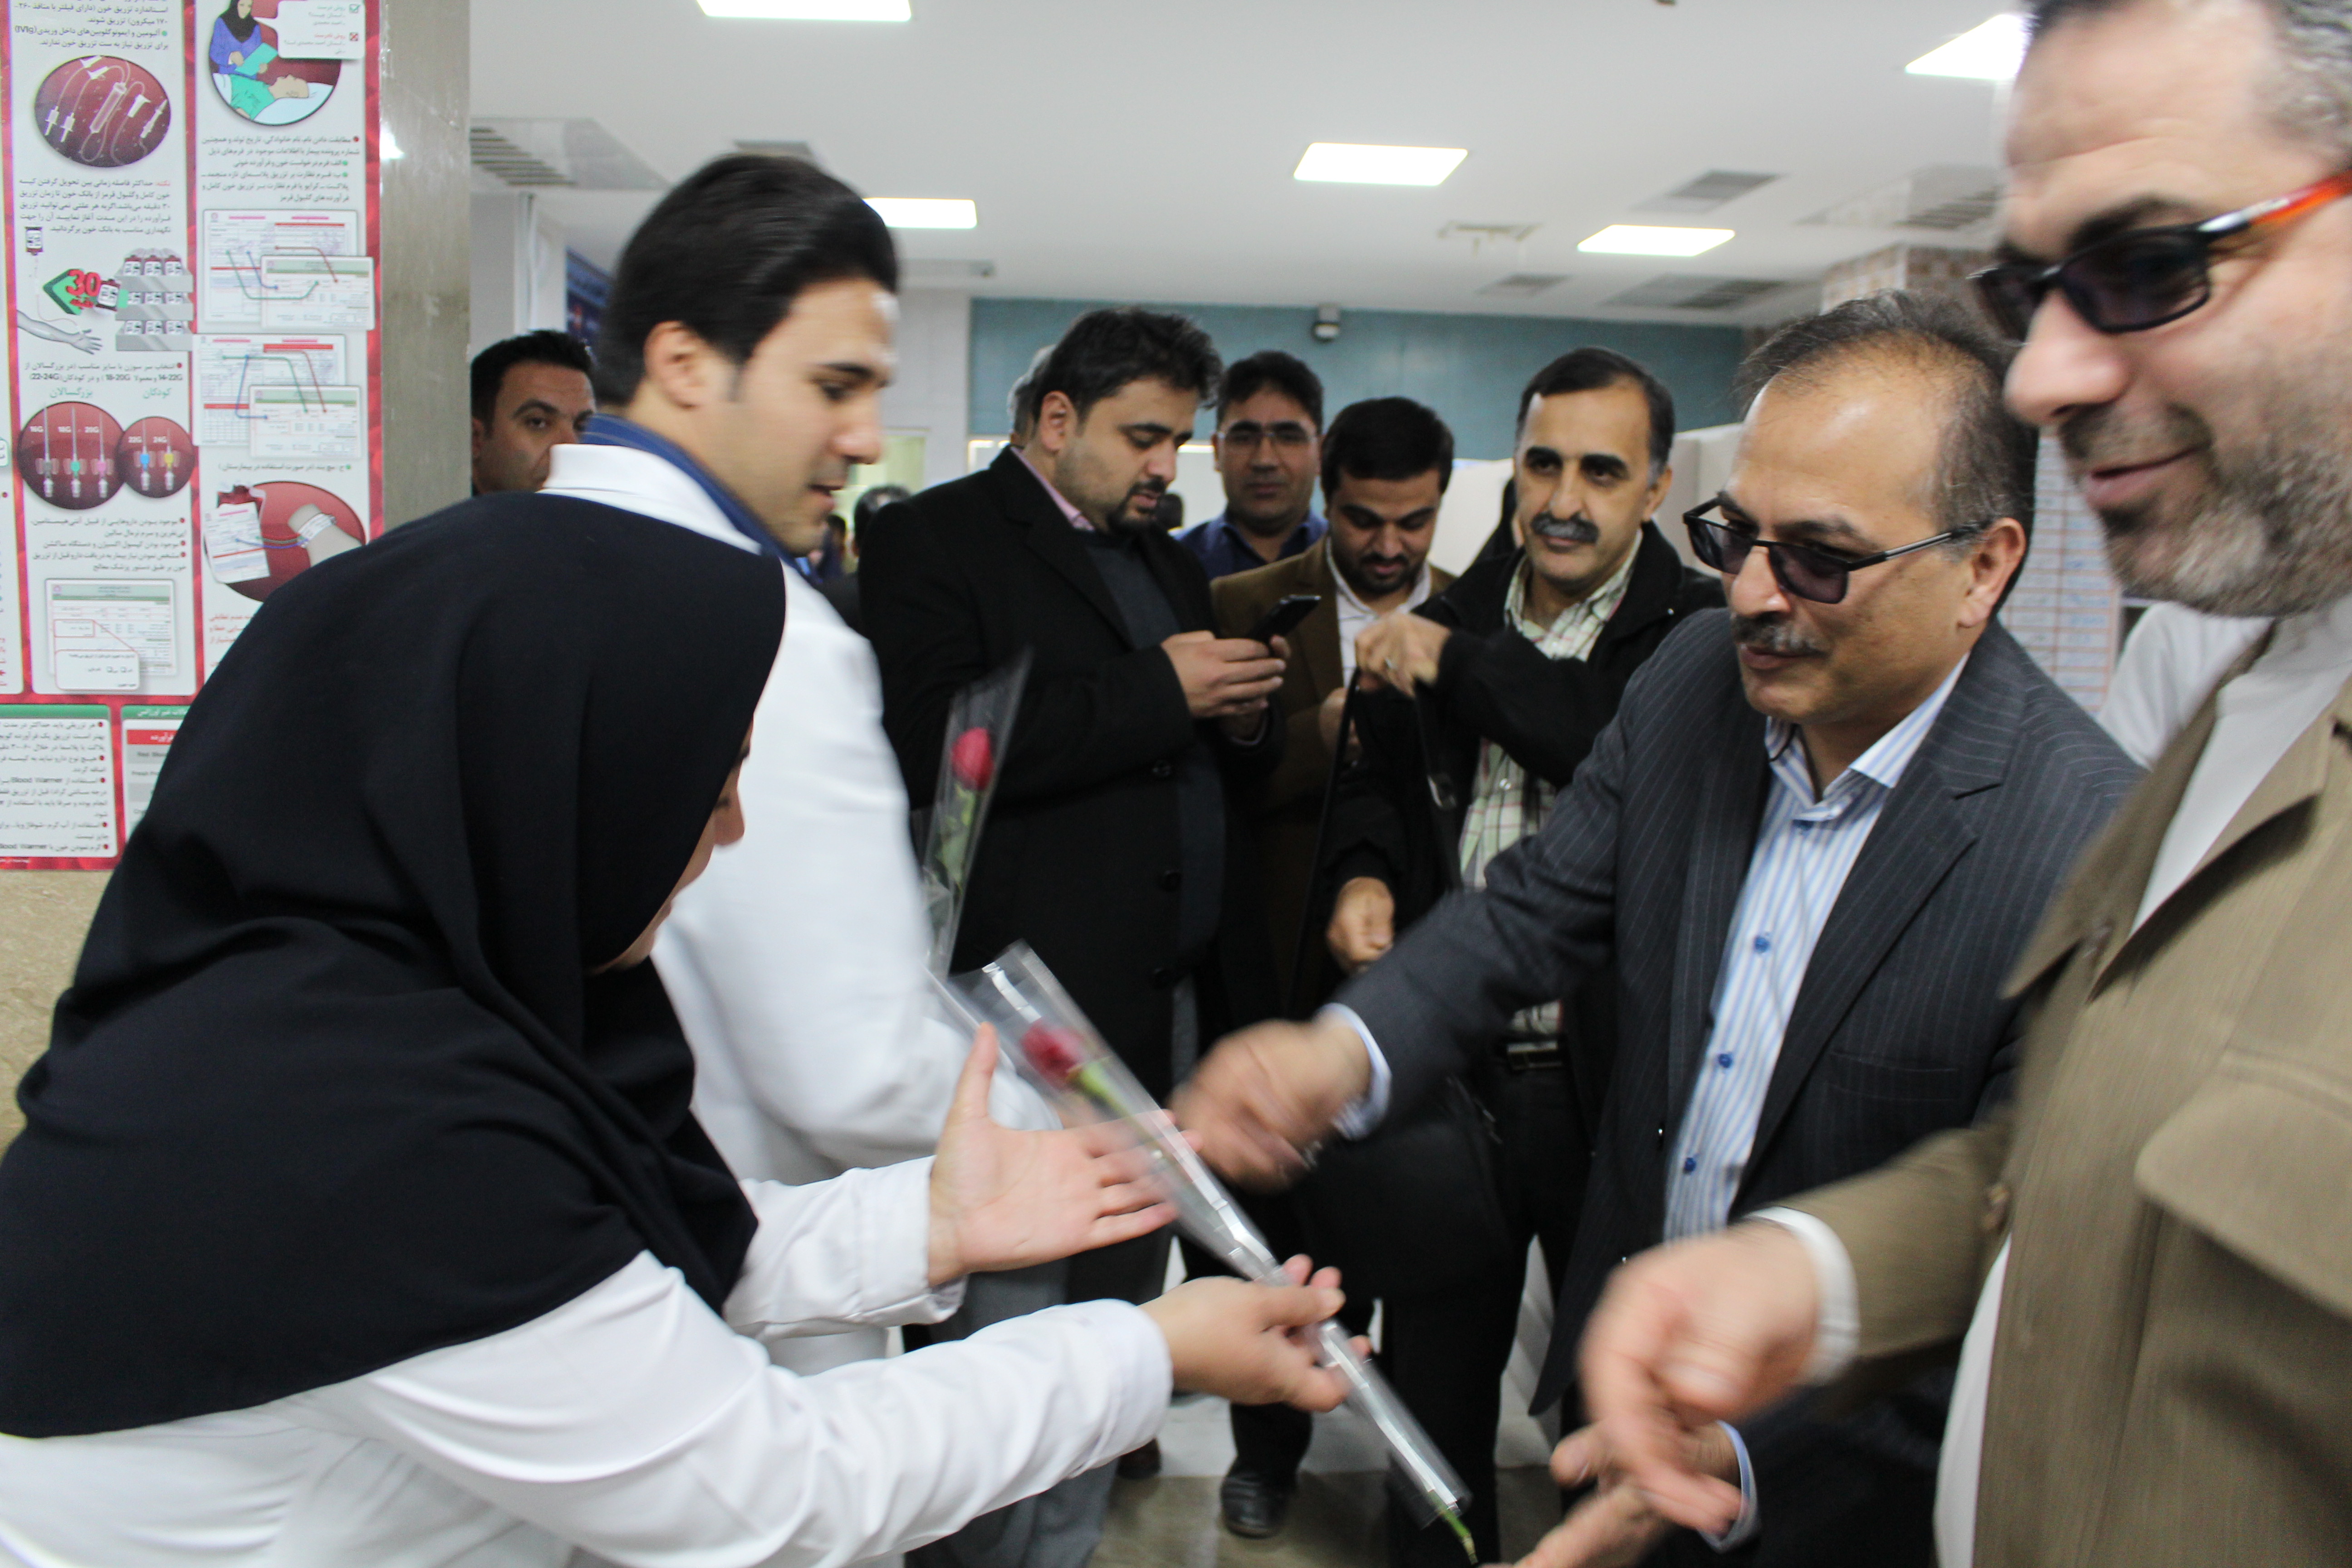 بازدید رییس دانشگاه ازبیمارستان امام علی (ع) بجنورد وعرض تبریک به پرستاران به مناسبت روز پرستار